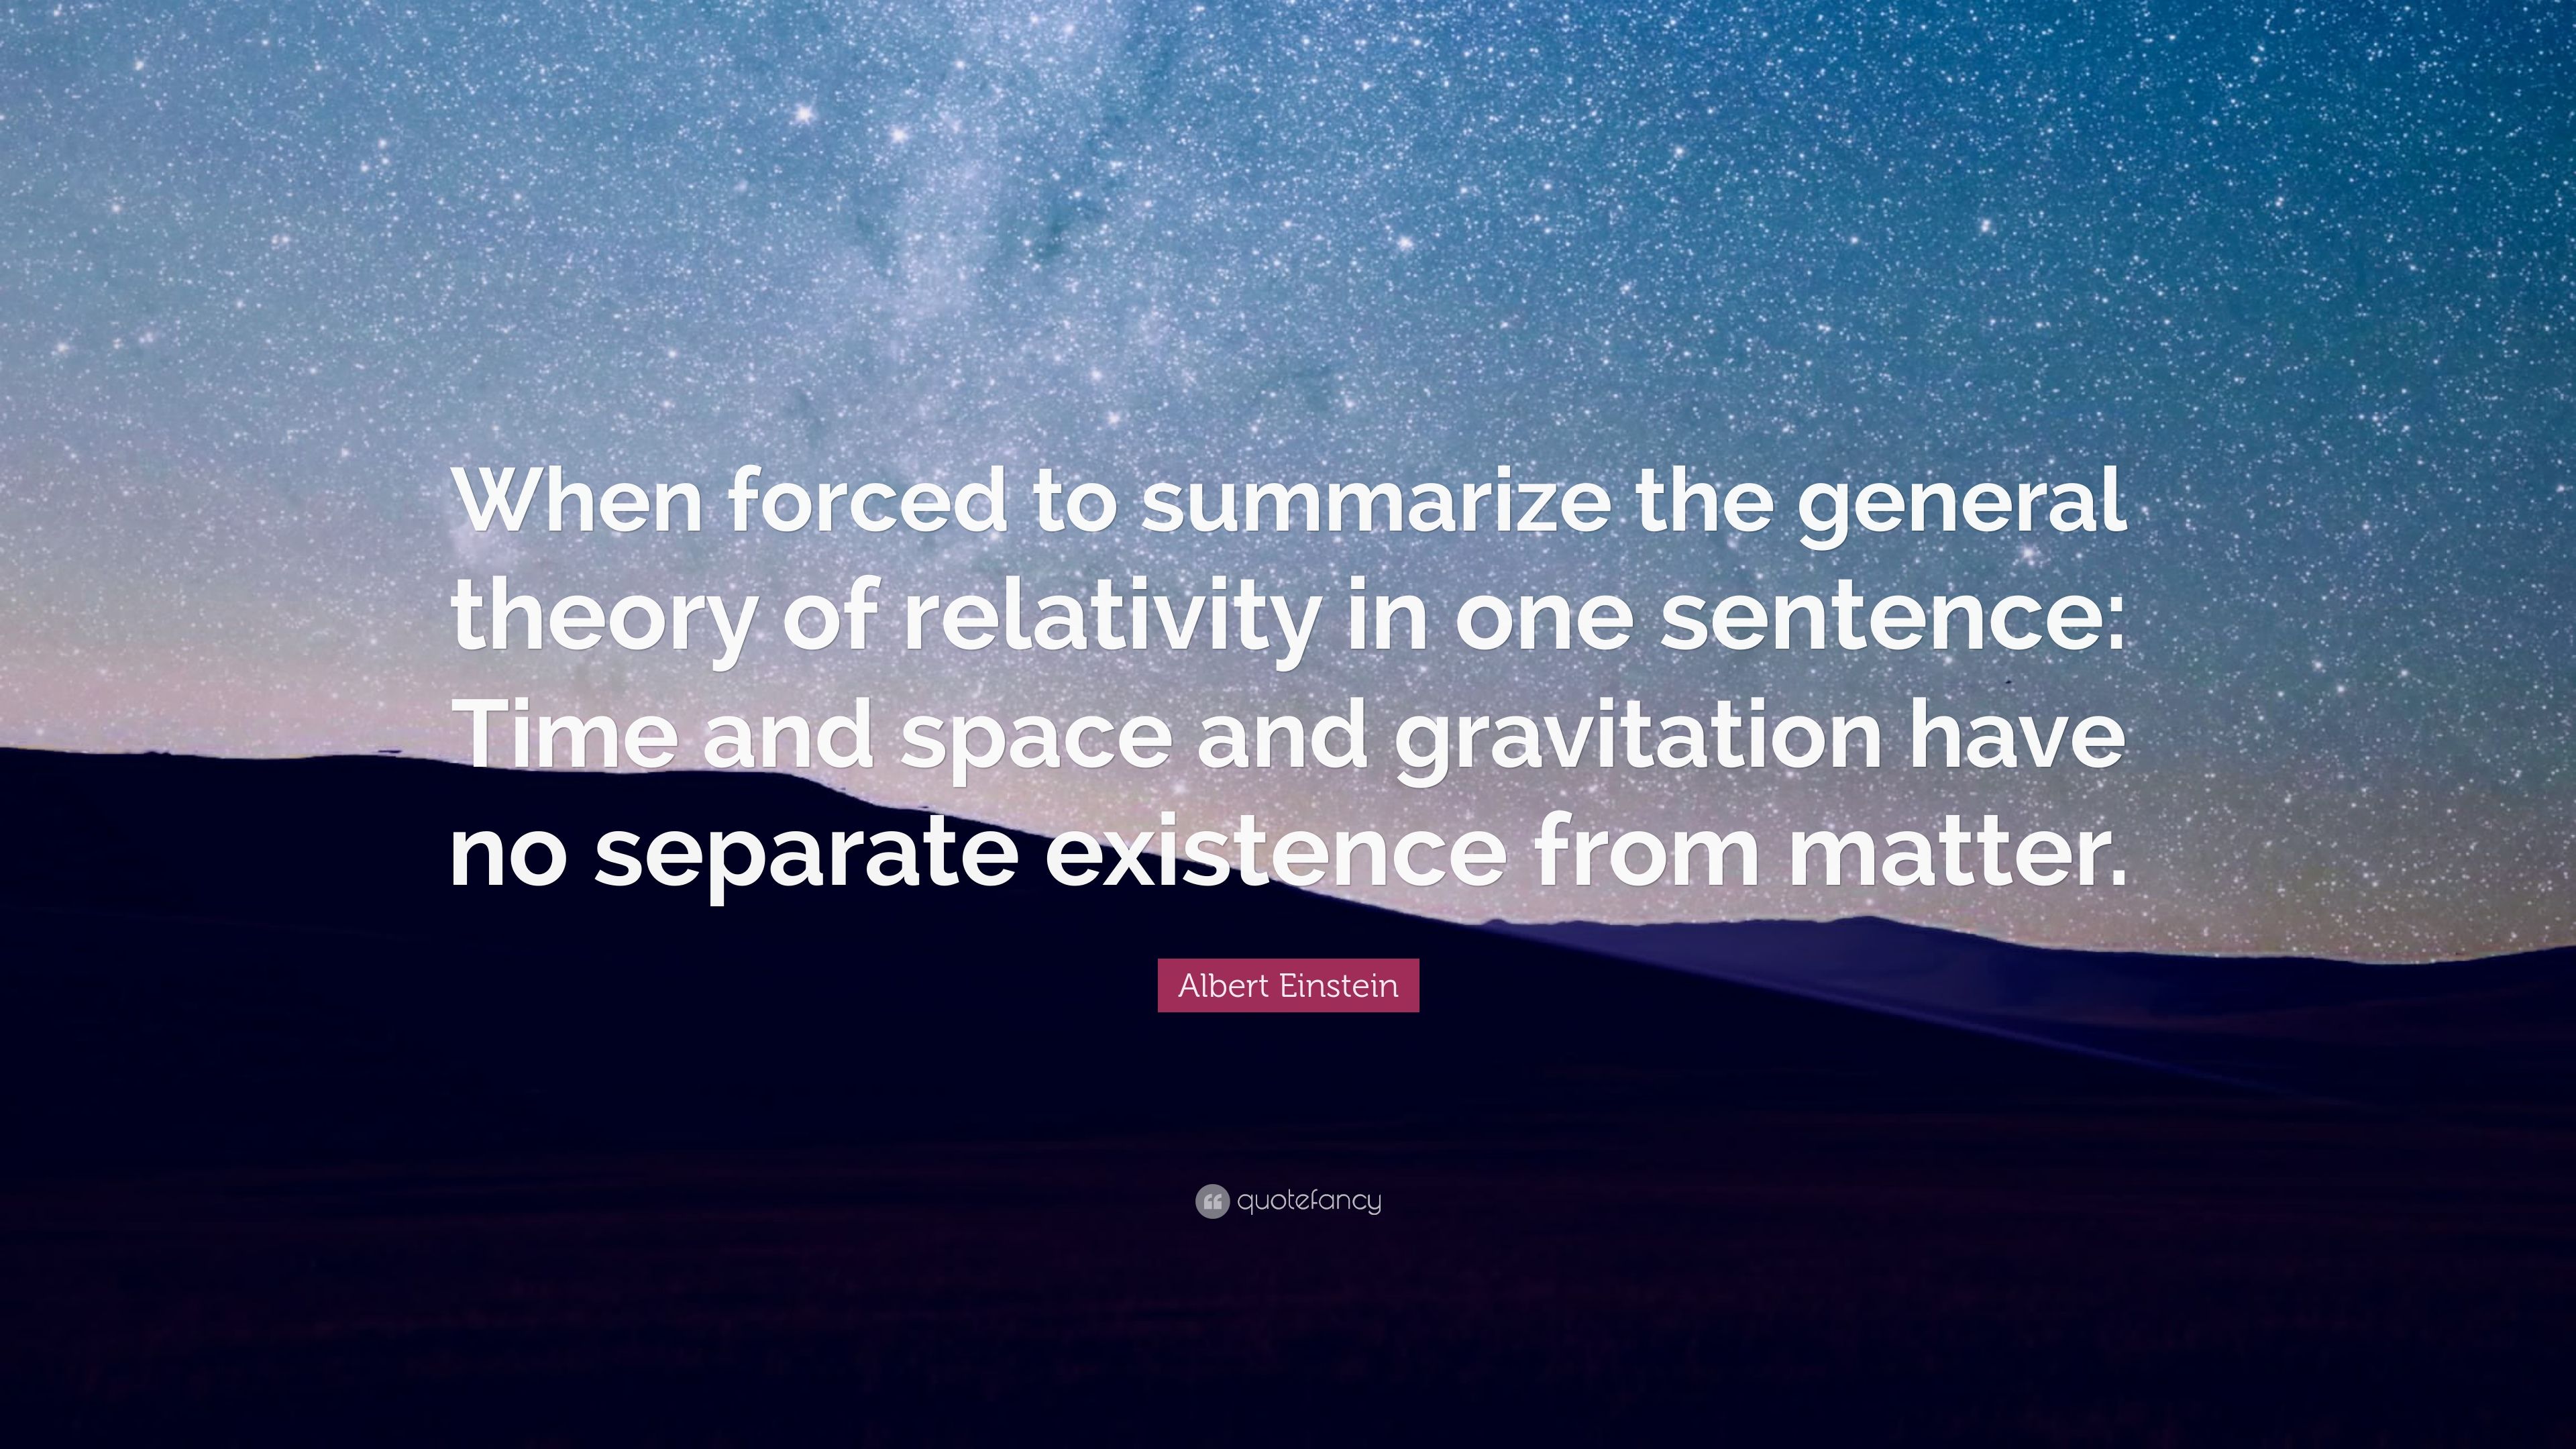 Albert Einstein Quote: “When forced to summarize the general